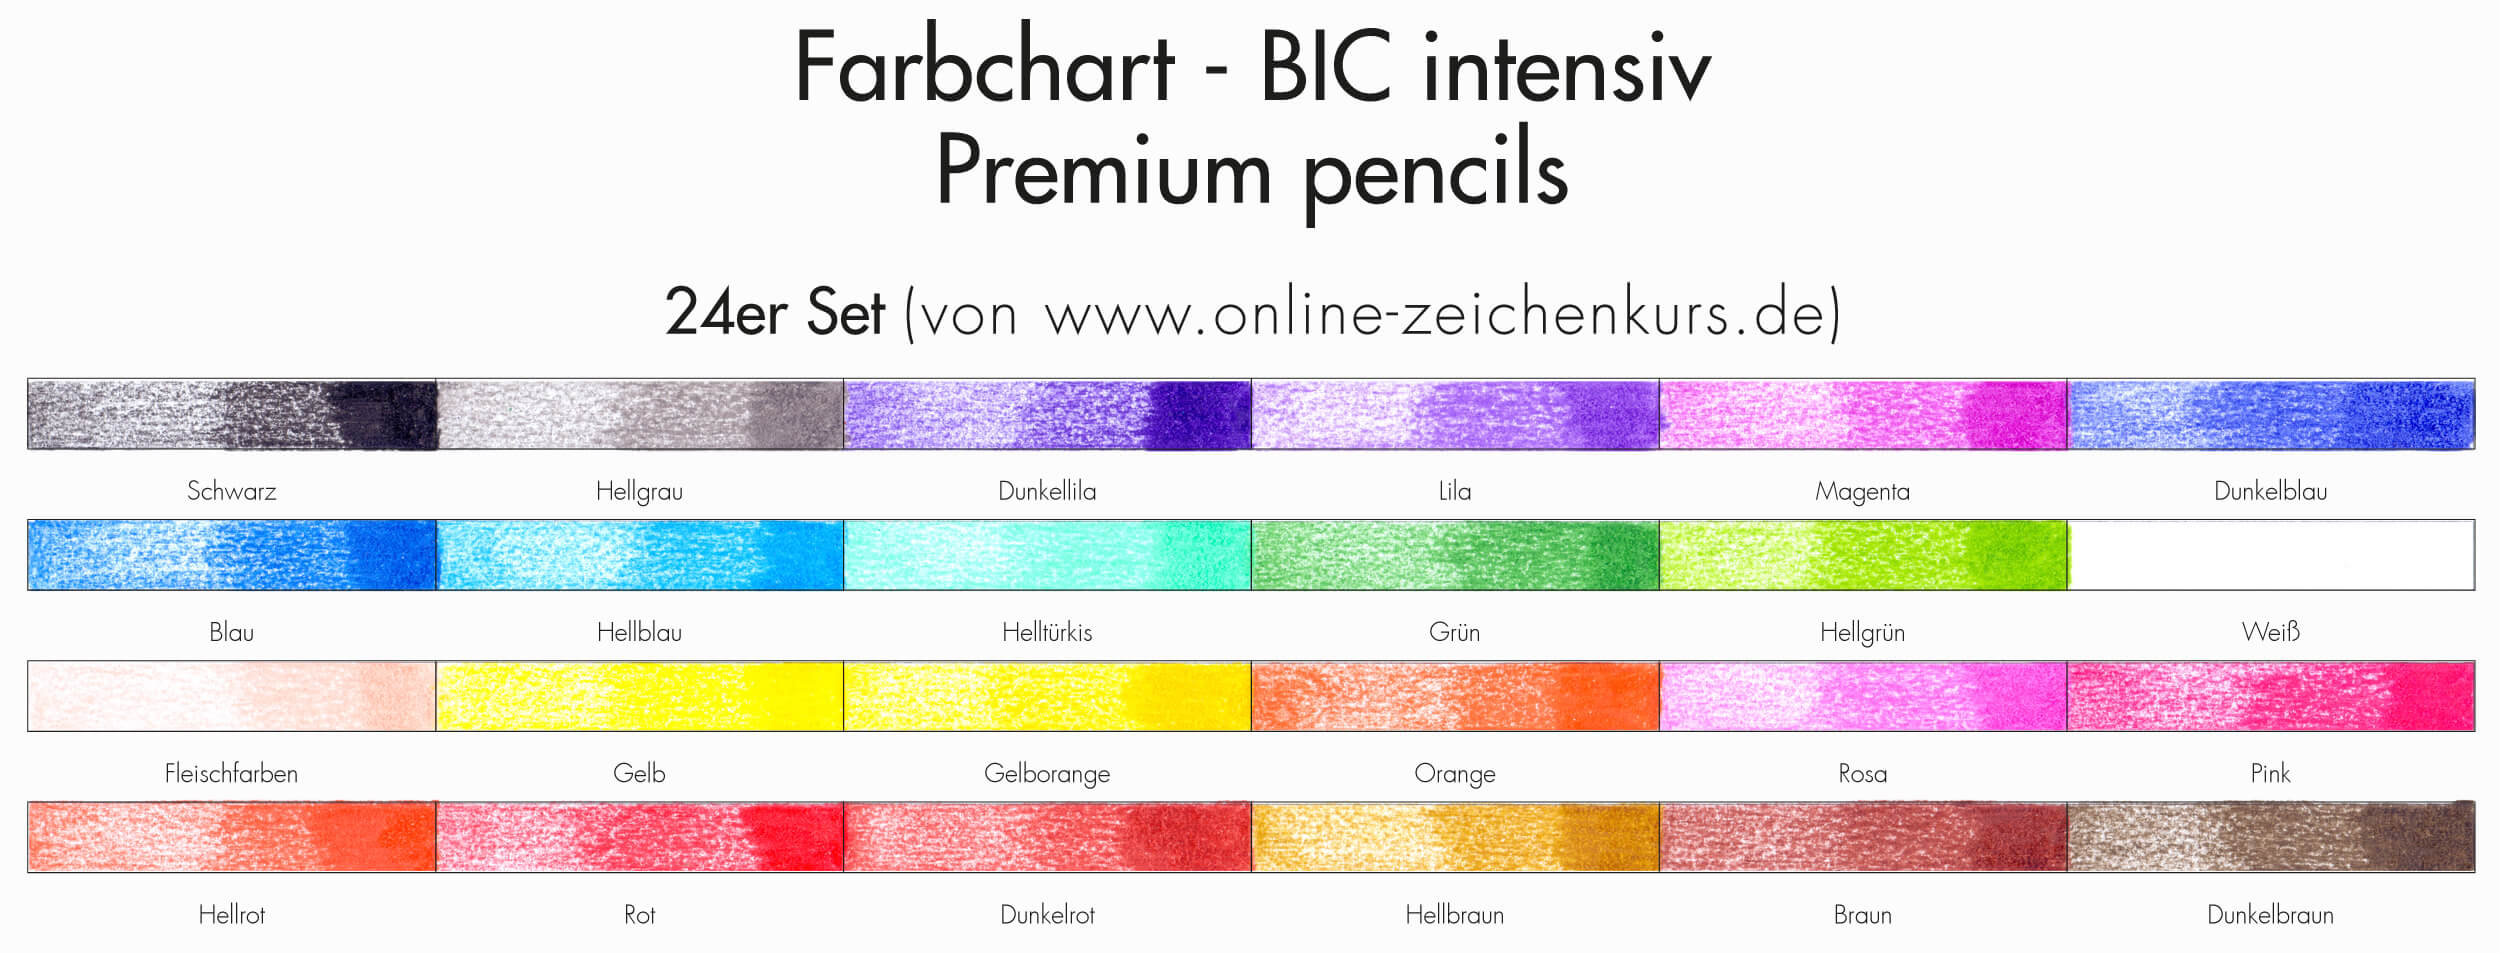 BIC Intensity Premium Buntstifte: Farbchart 24er Set ausgefüllt